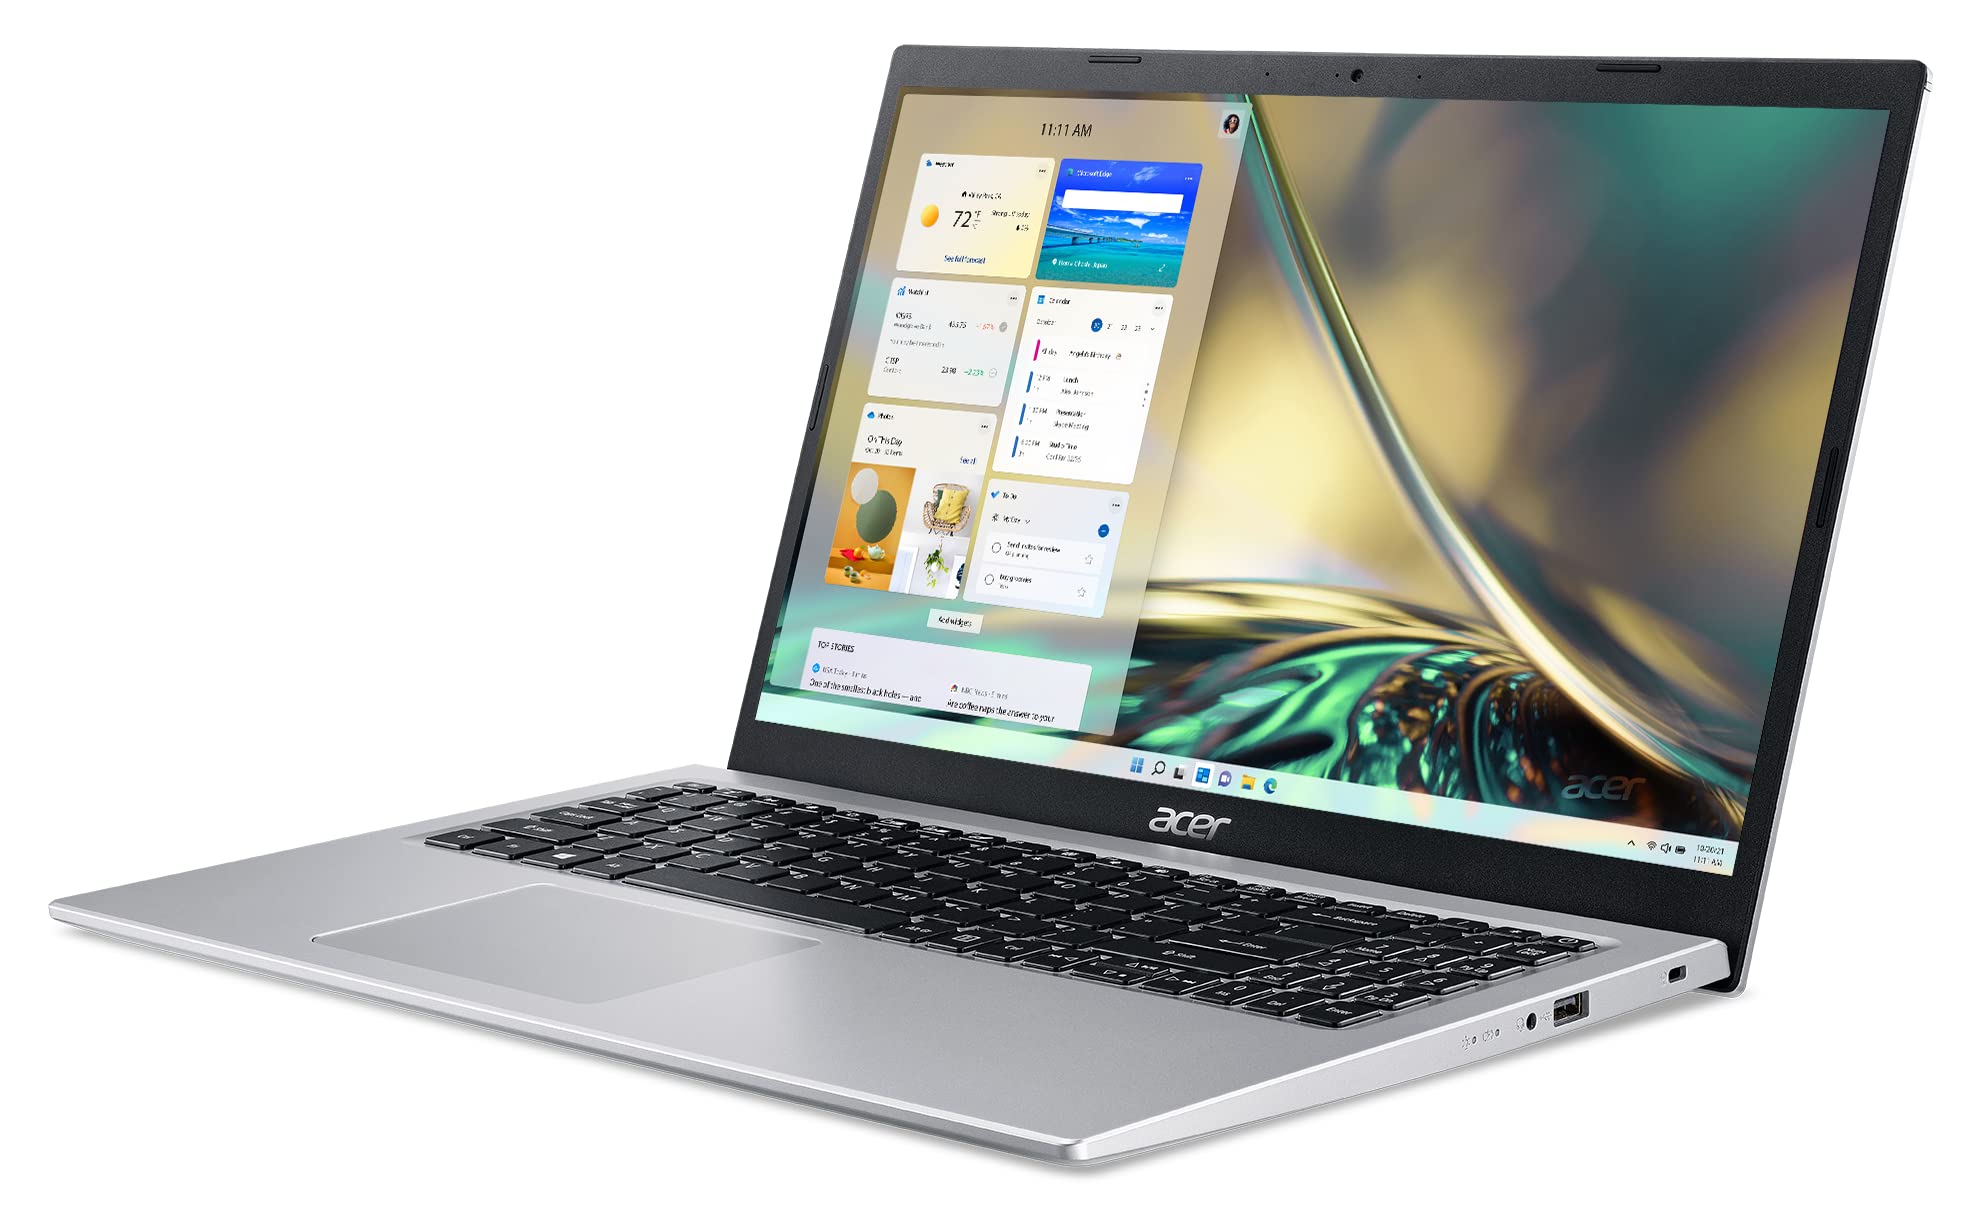 Acer Aspire 5 A515-56-347N Slim Laptop - 15.6